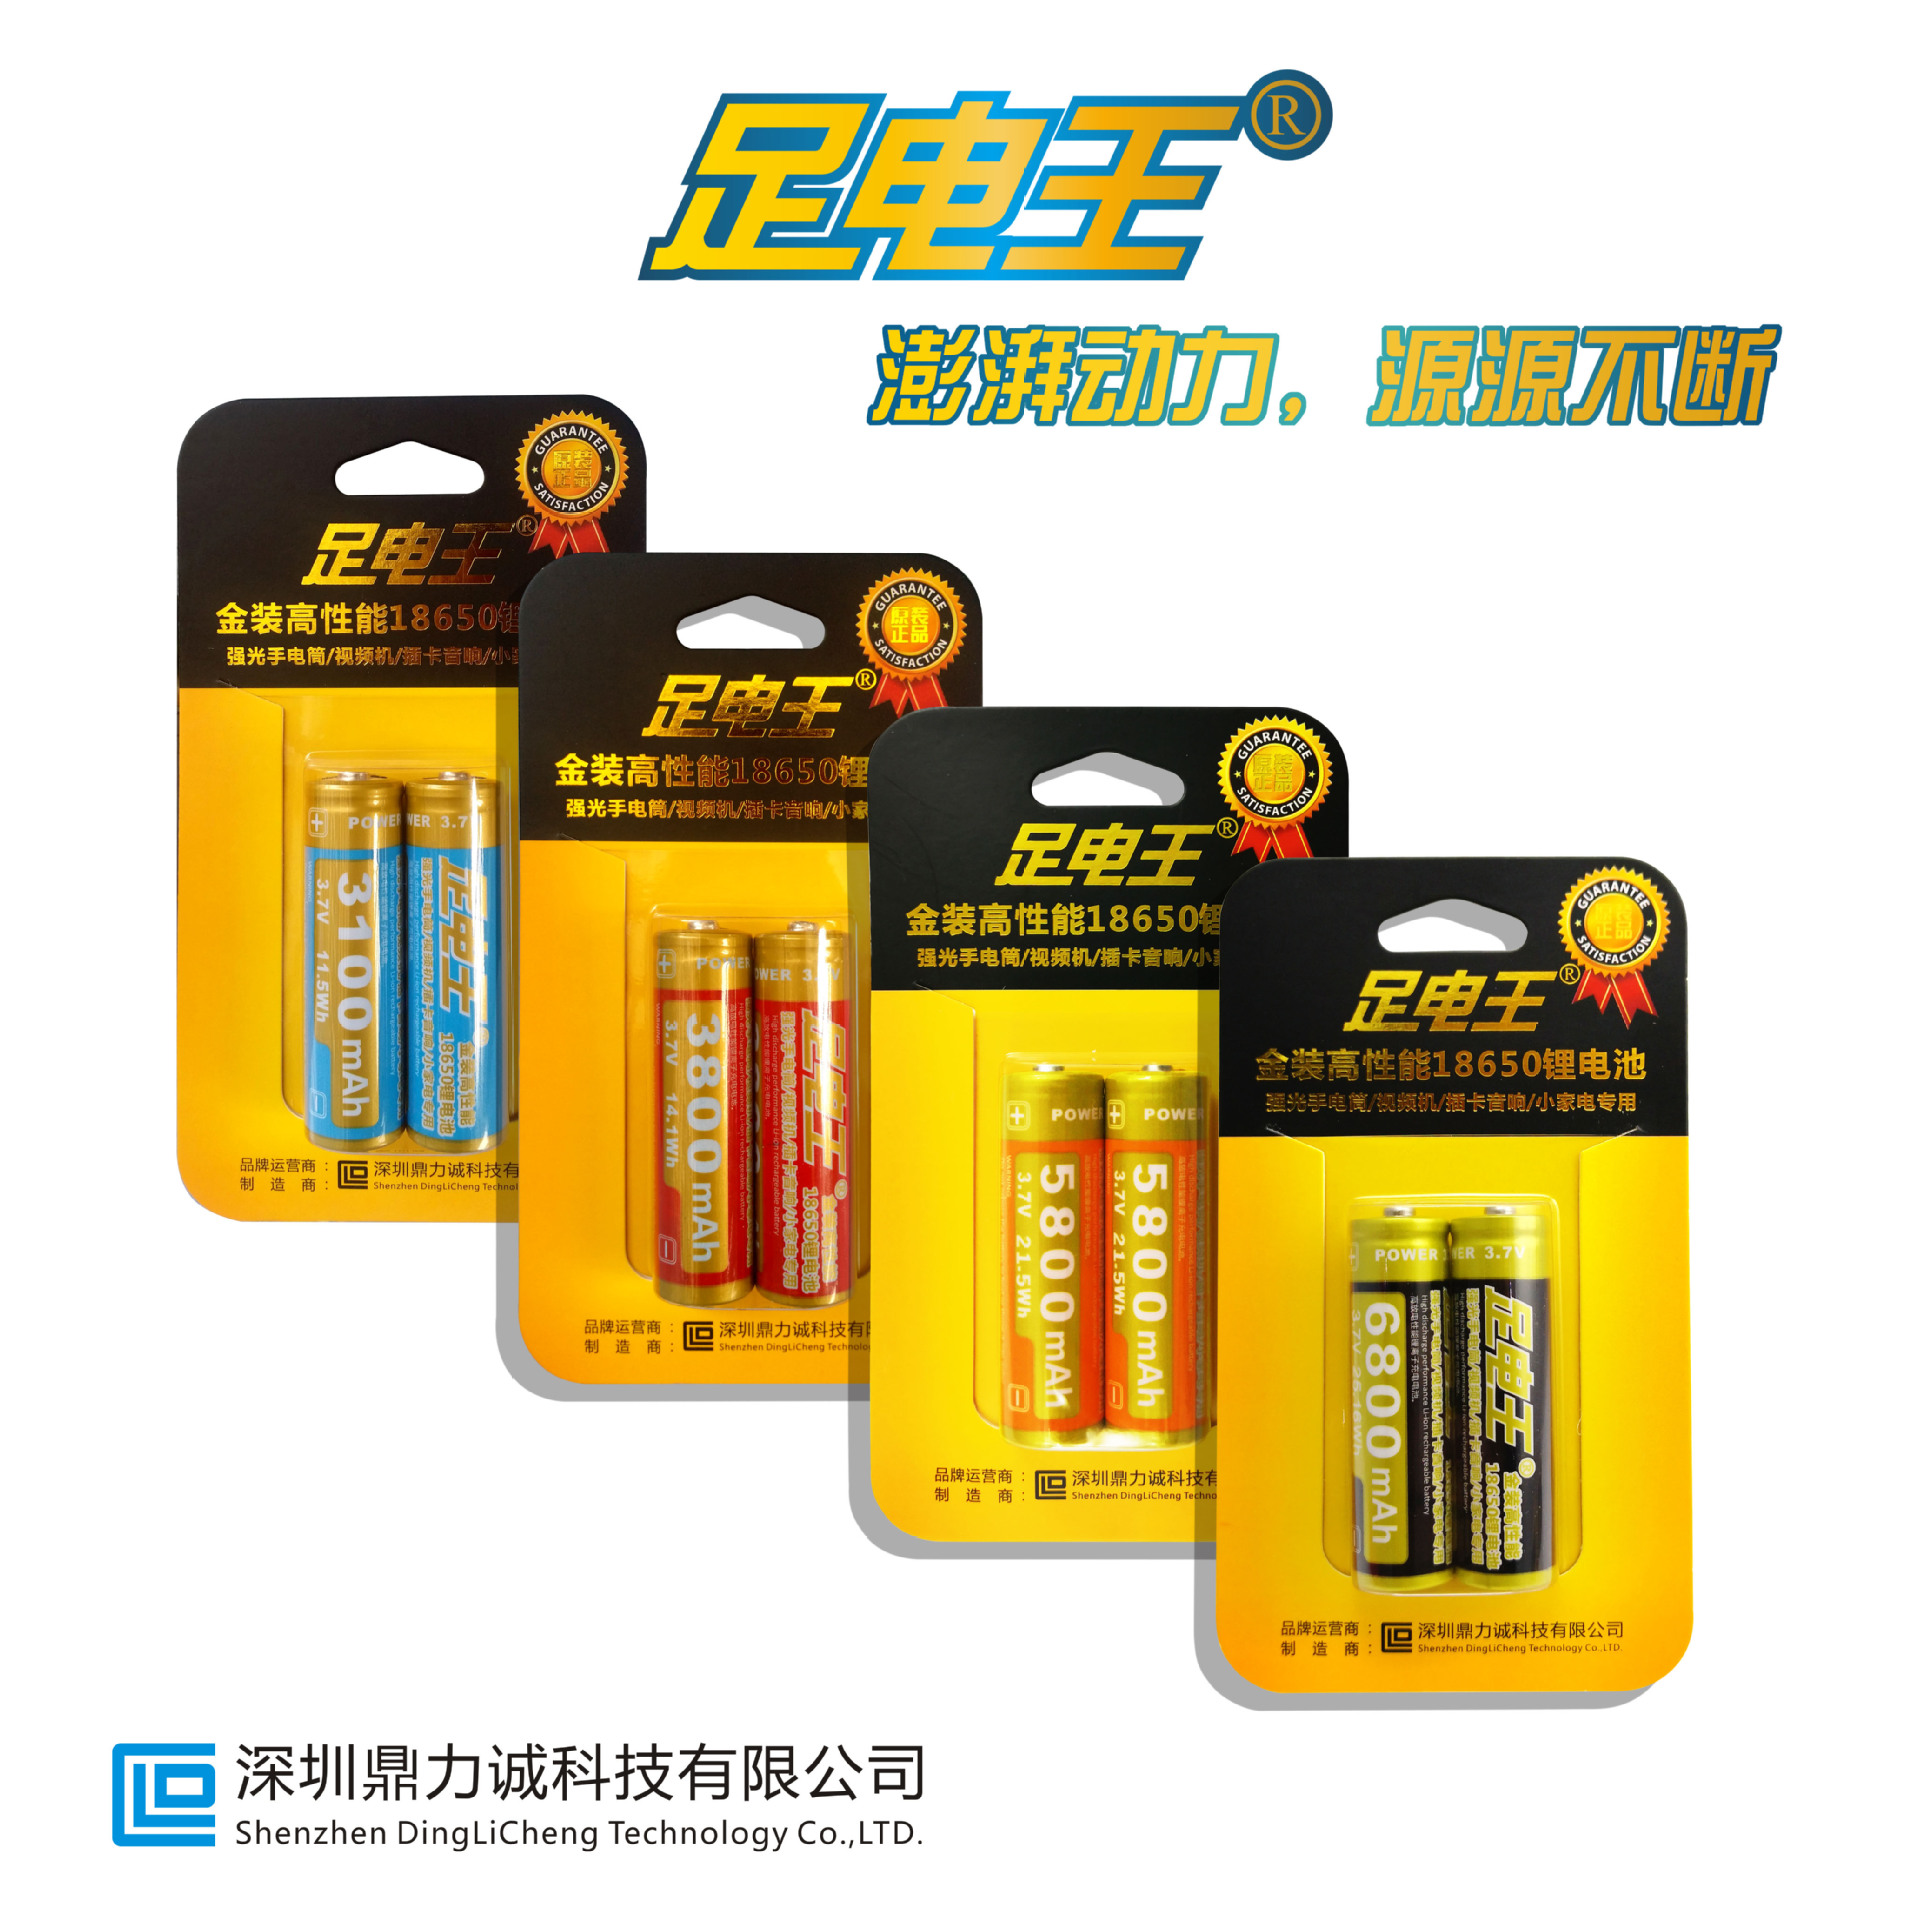 足电王大容量18650锂电池 话筒视频机台灯手电筒风扇适用厂家直销